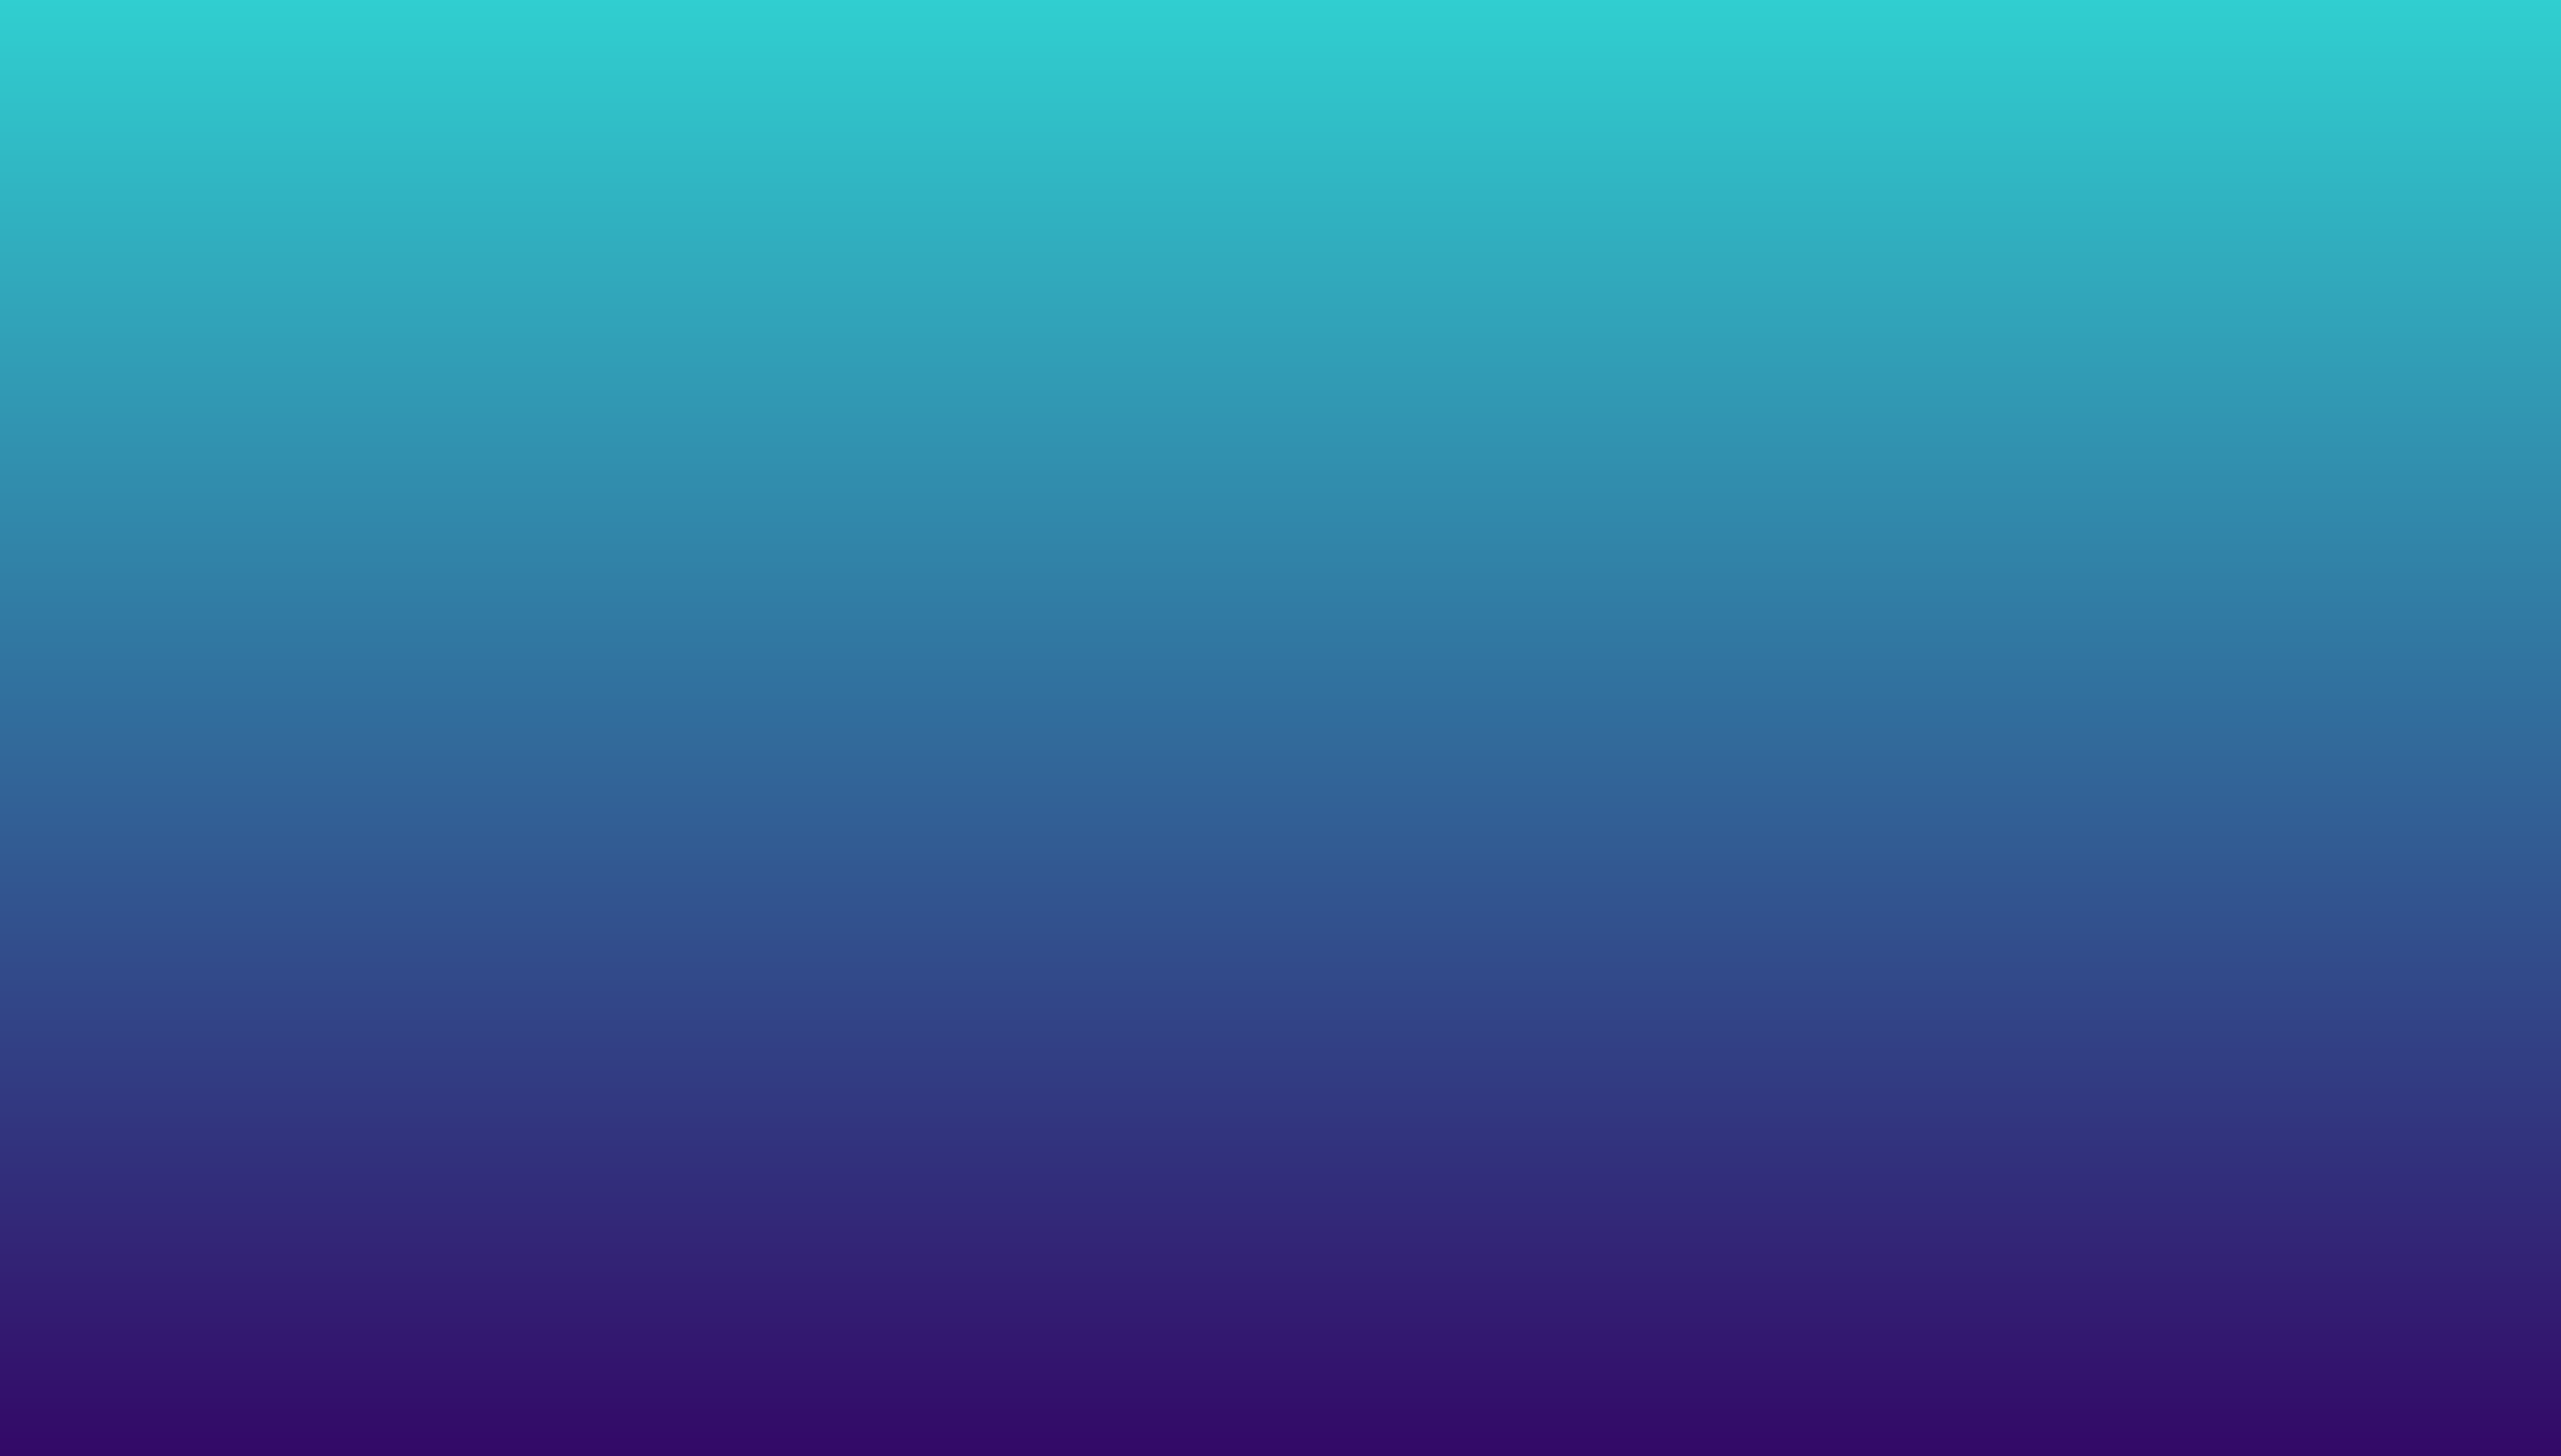 , , Hy Value grafikk 1 til nettsider, , Bilde med farger fra turkis til blått. Dette er HyValue sine farger.